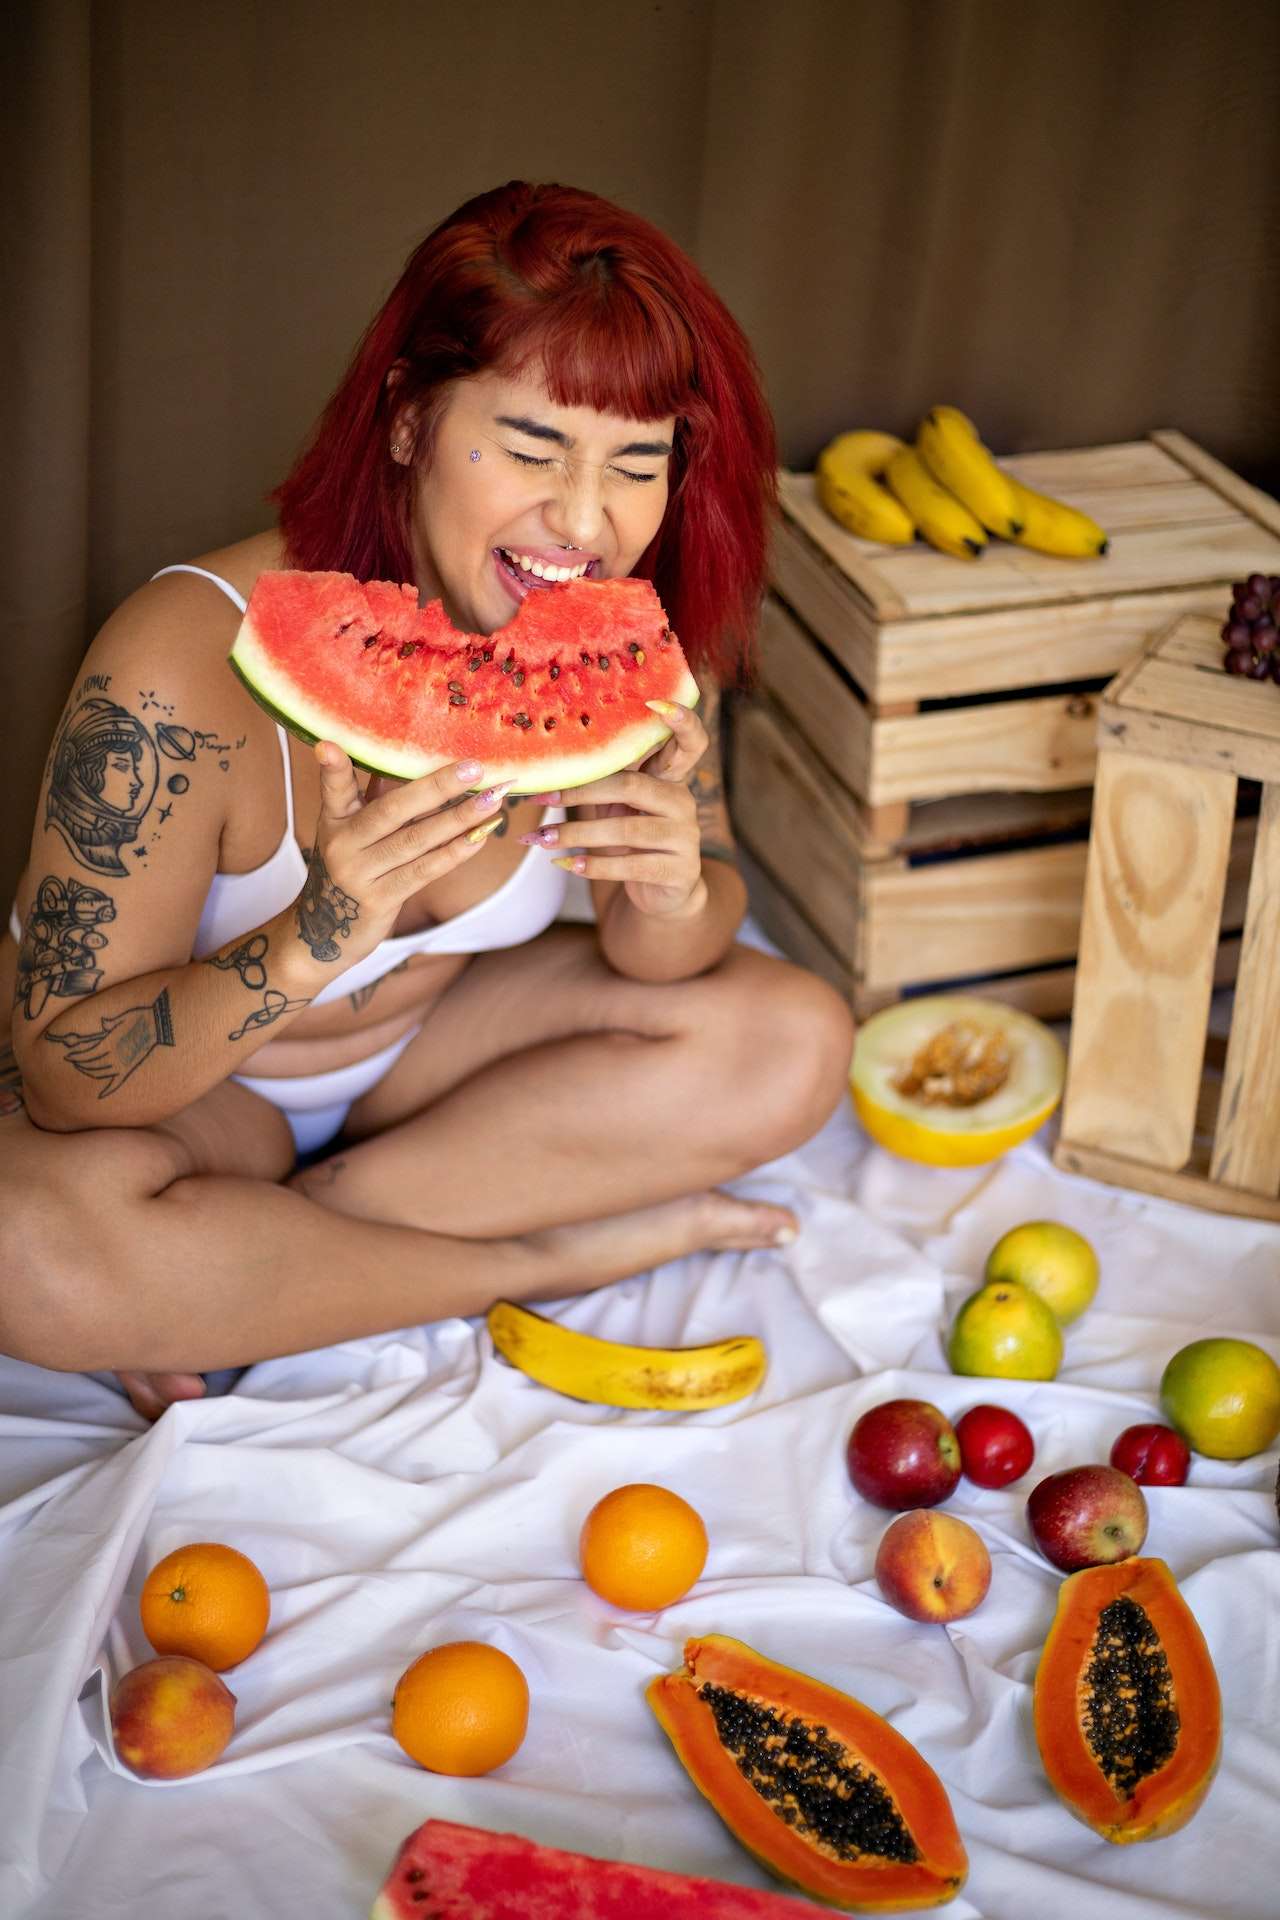 A Woman in a White Bikini Eating a Watermelon